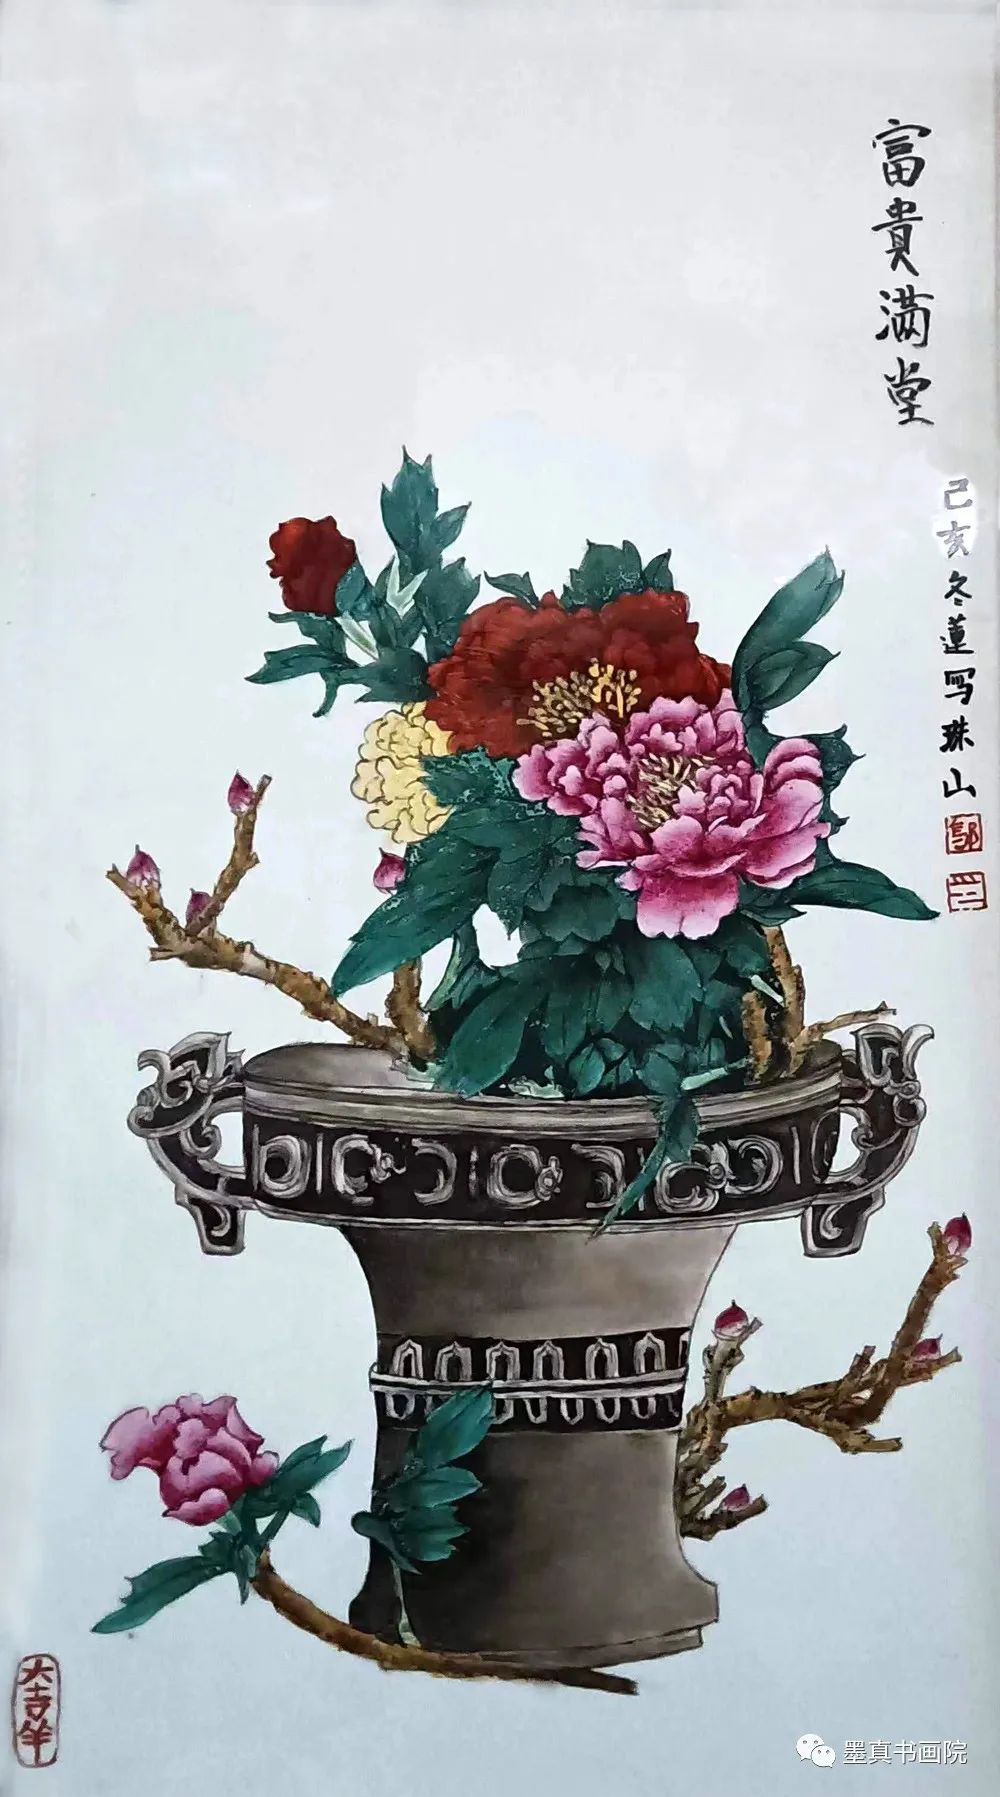 《大匠之风》中国当代陶瓷艺术名家作品鉴赏大展——邬冬莲